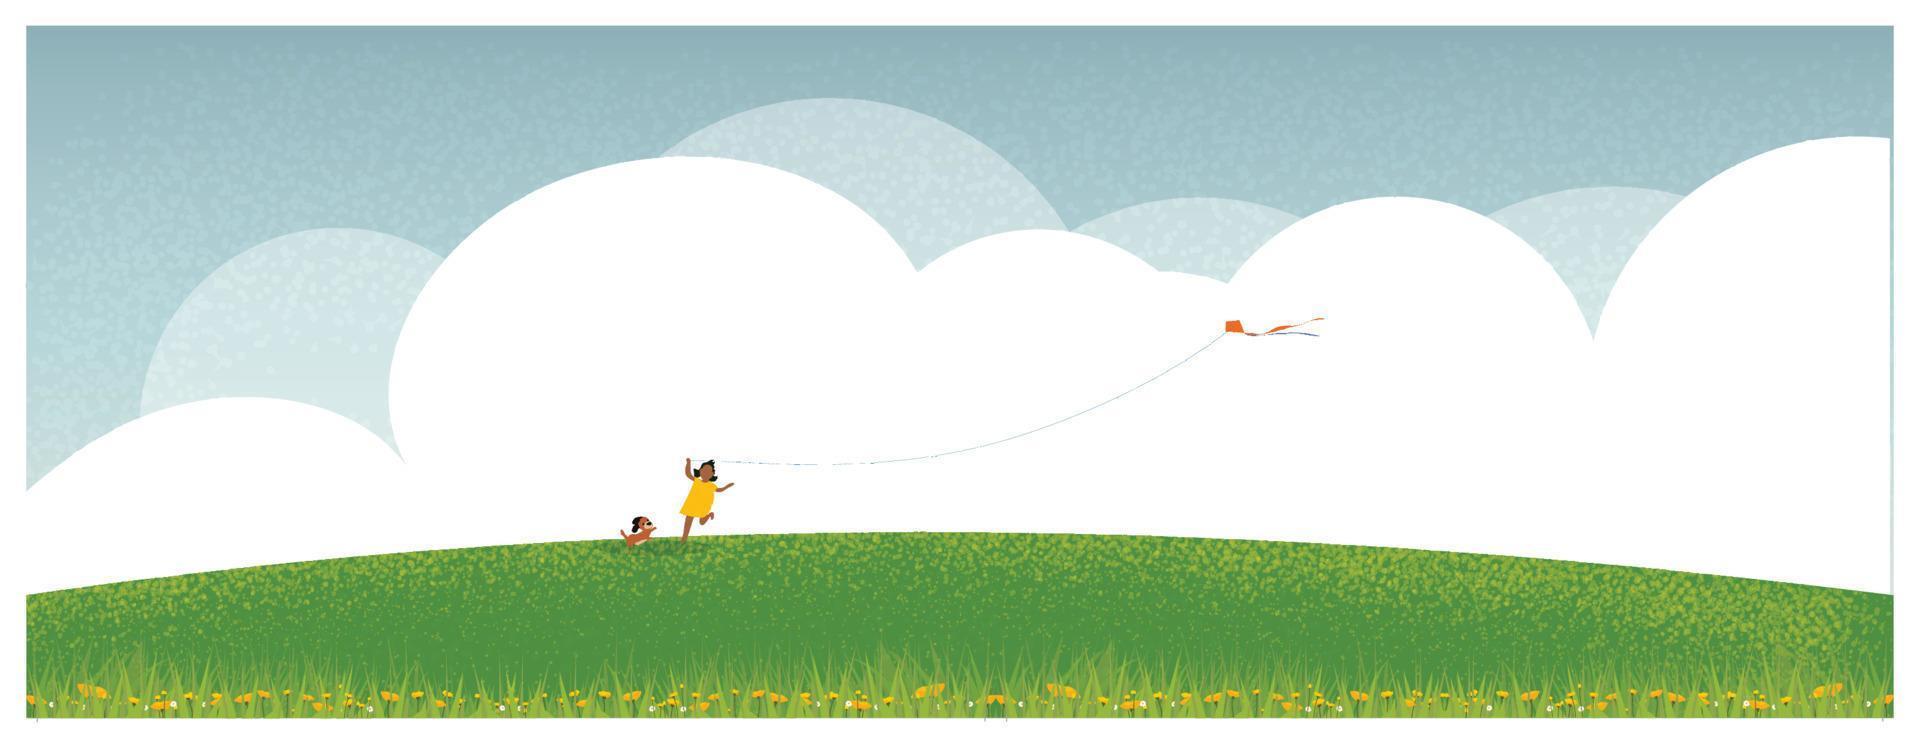 illustrazione vettoriale panoramica del paesaggio primaverile estivo con cielo blu e sfondo clound. bel tempo, bambino felice che gioca aquilone con il cane. erba verde ventosa e fiori di papavero sulla collina verde.